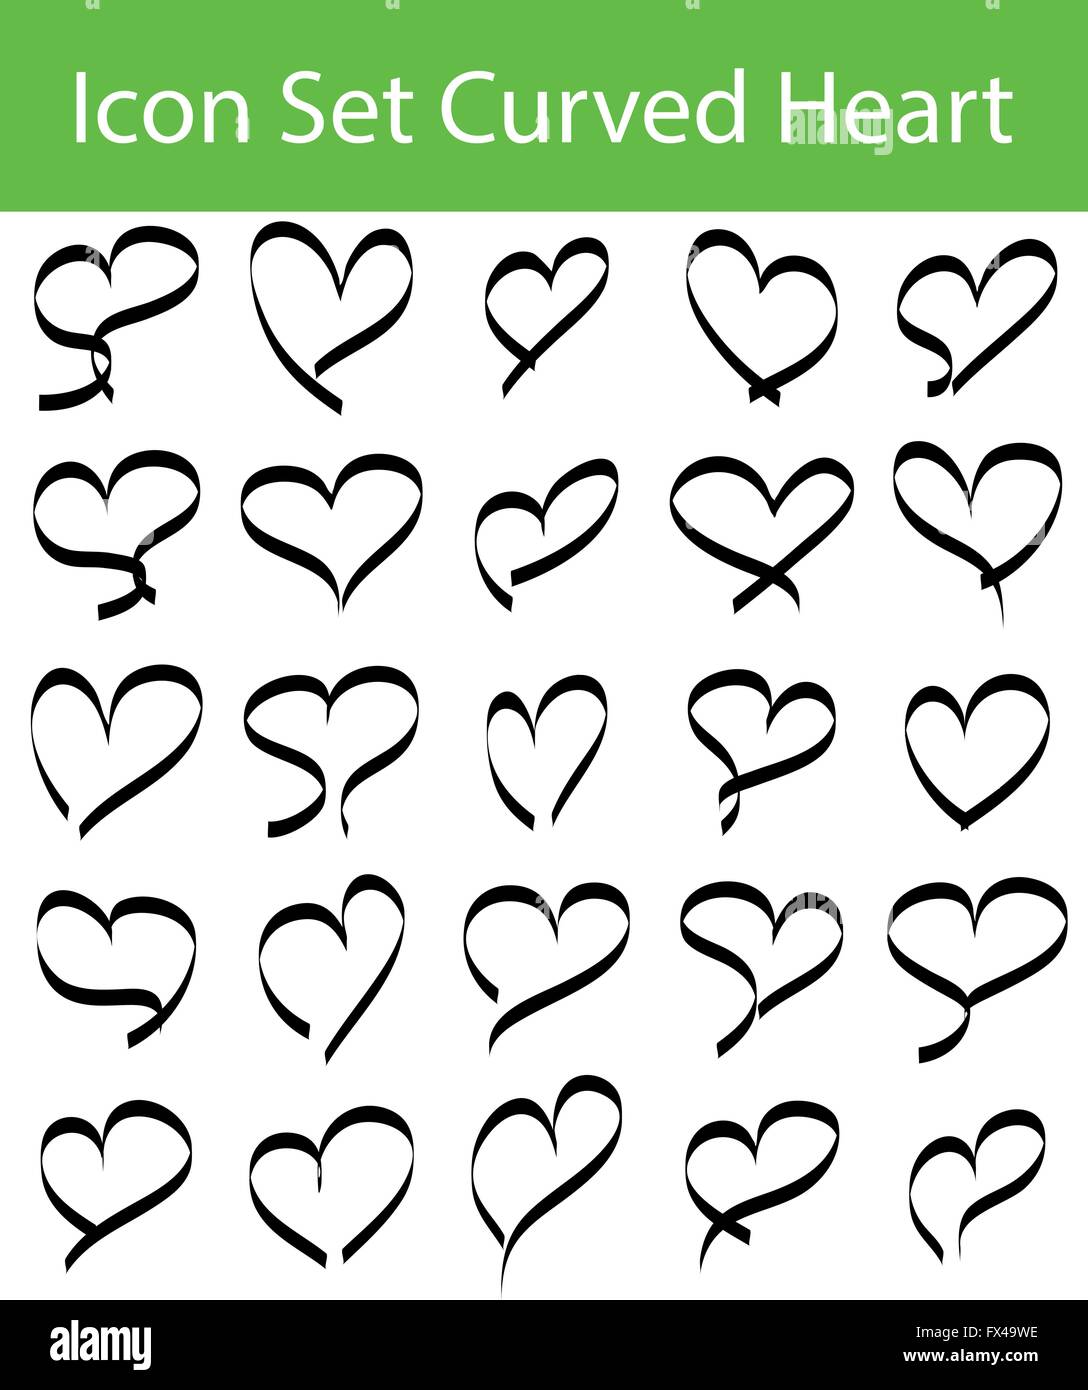 Il set di icone di cuori curvo con 16 icone per un utilizzo creativo in graphic design Illustrazione Vettoriale